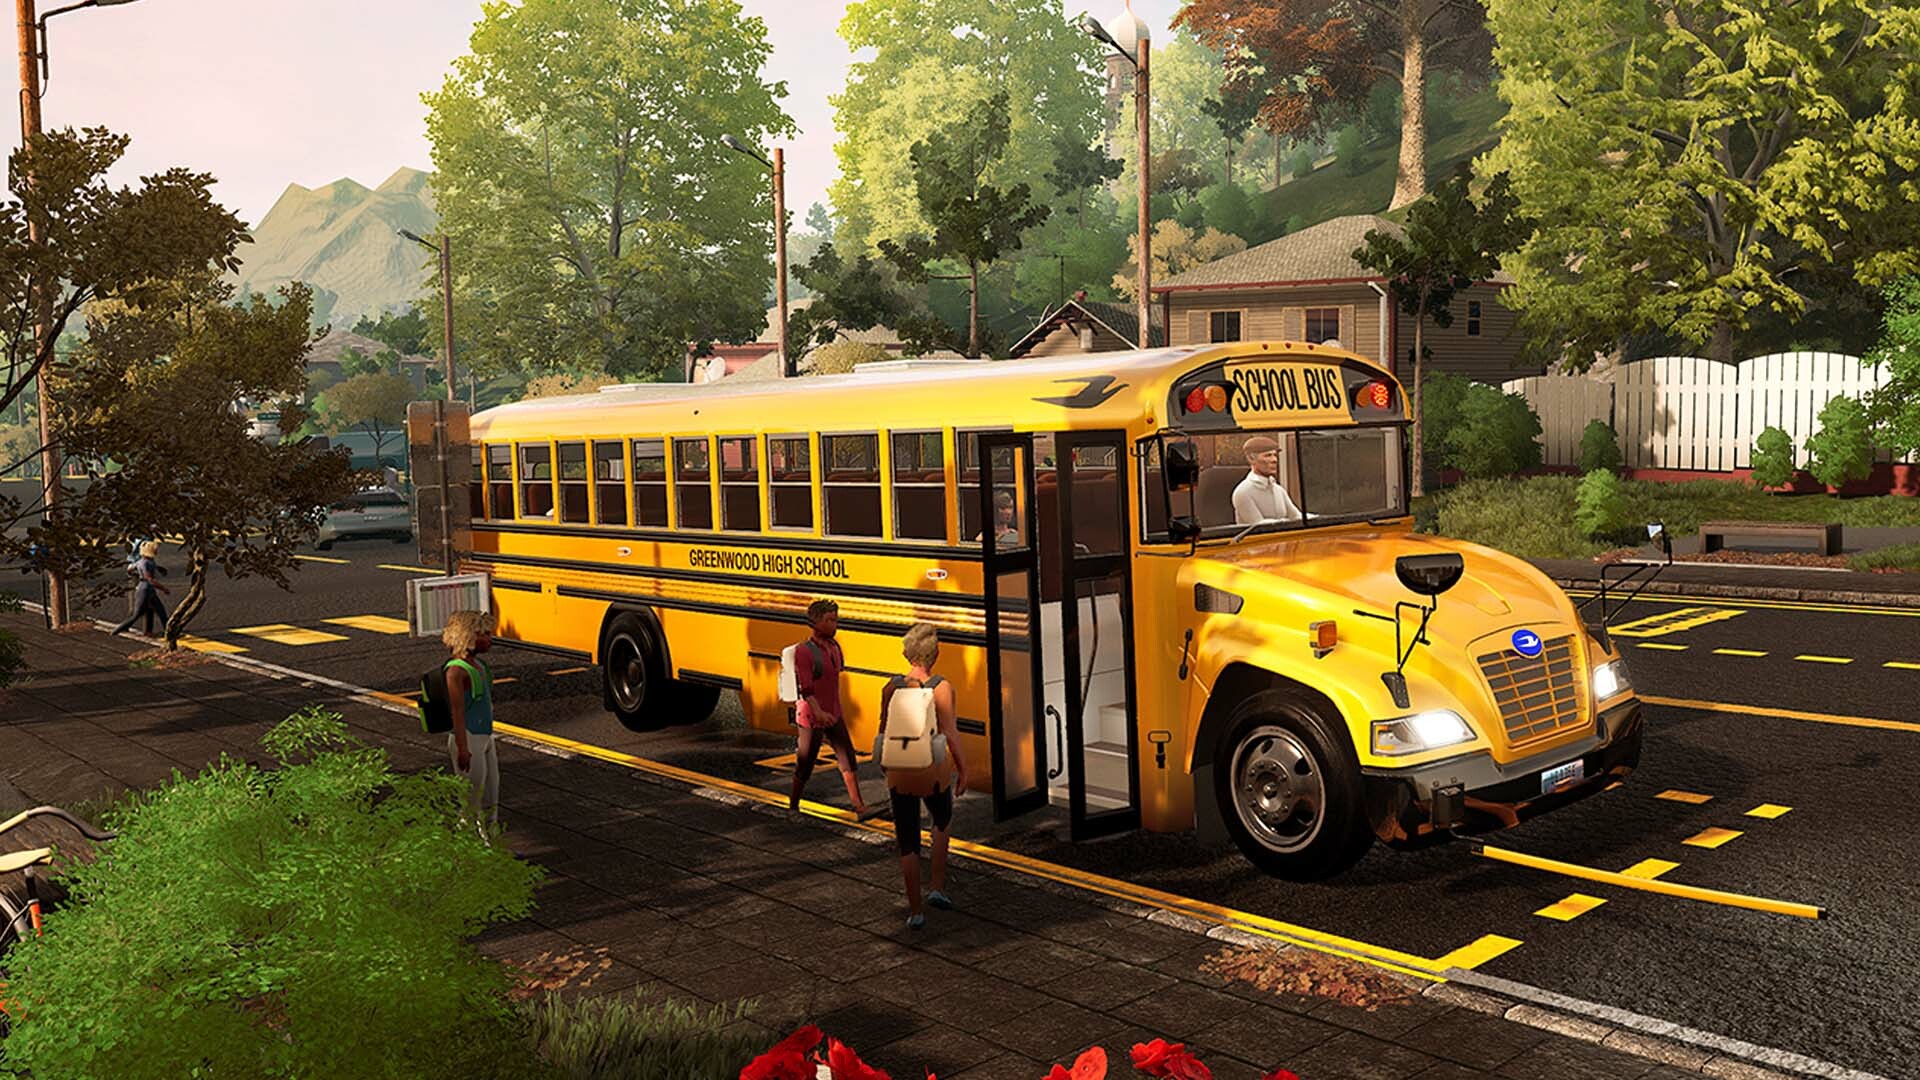 Stop Bus - Pass Season Steam 21 Simulator Next on